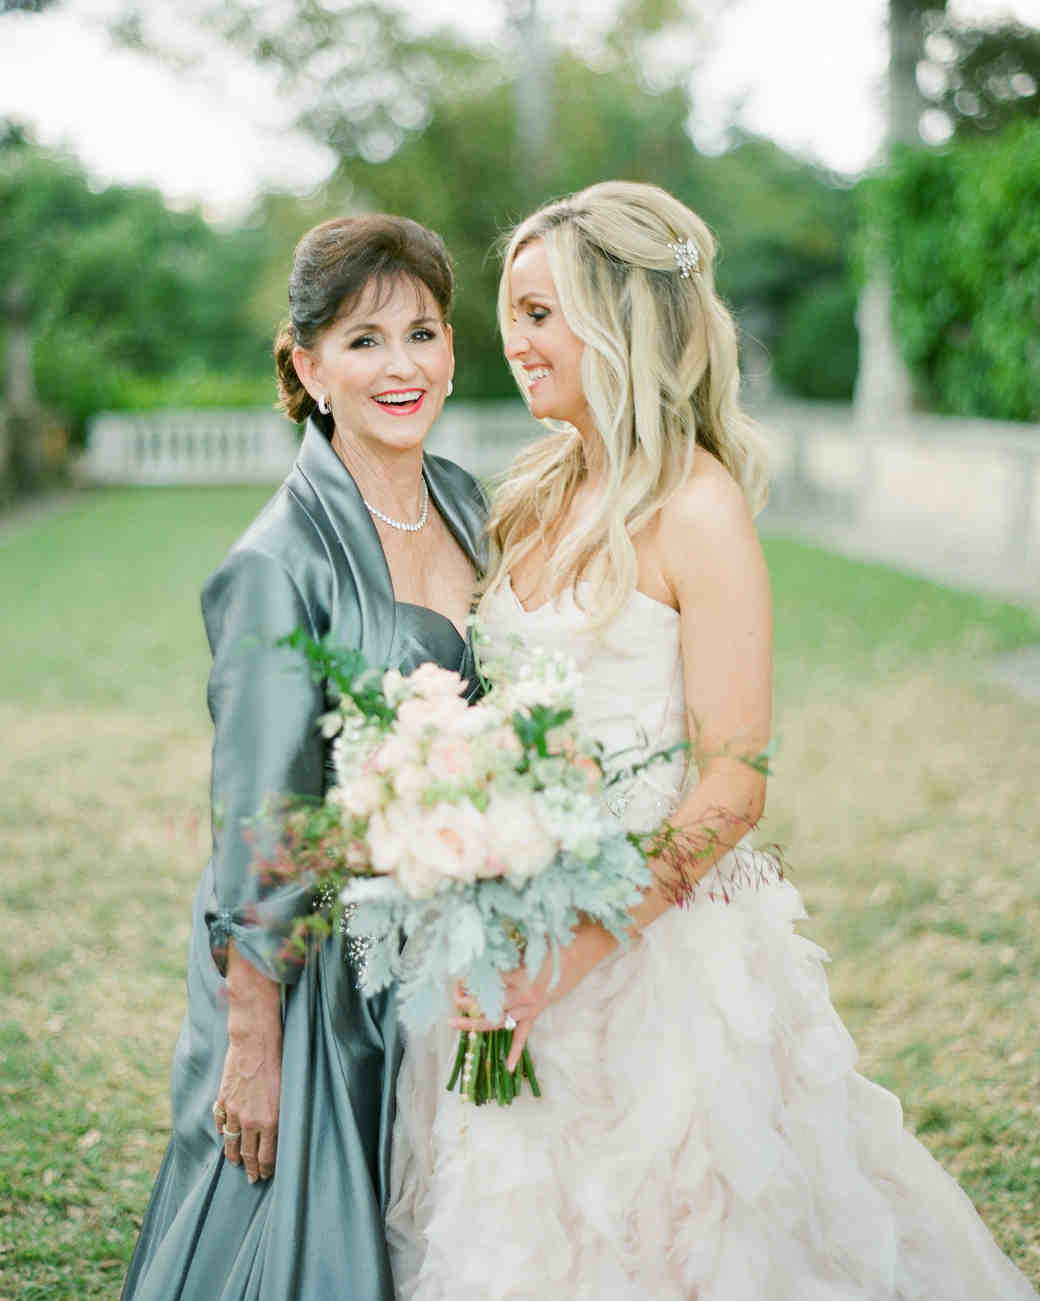 55 Heartwarming Mother-Daughter Wedding Photos | Martha ...